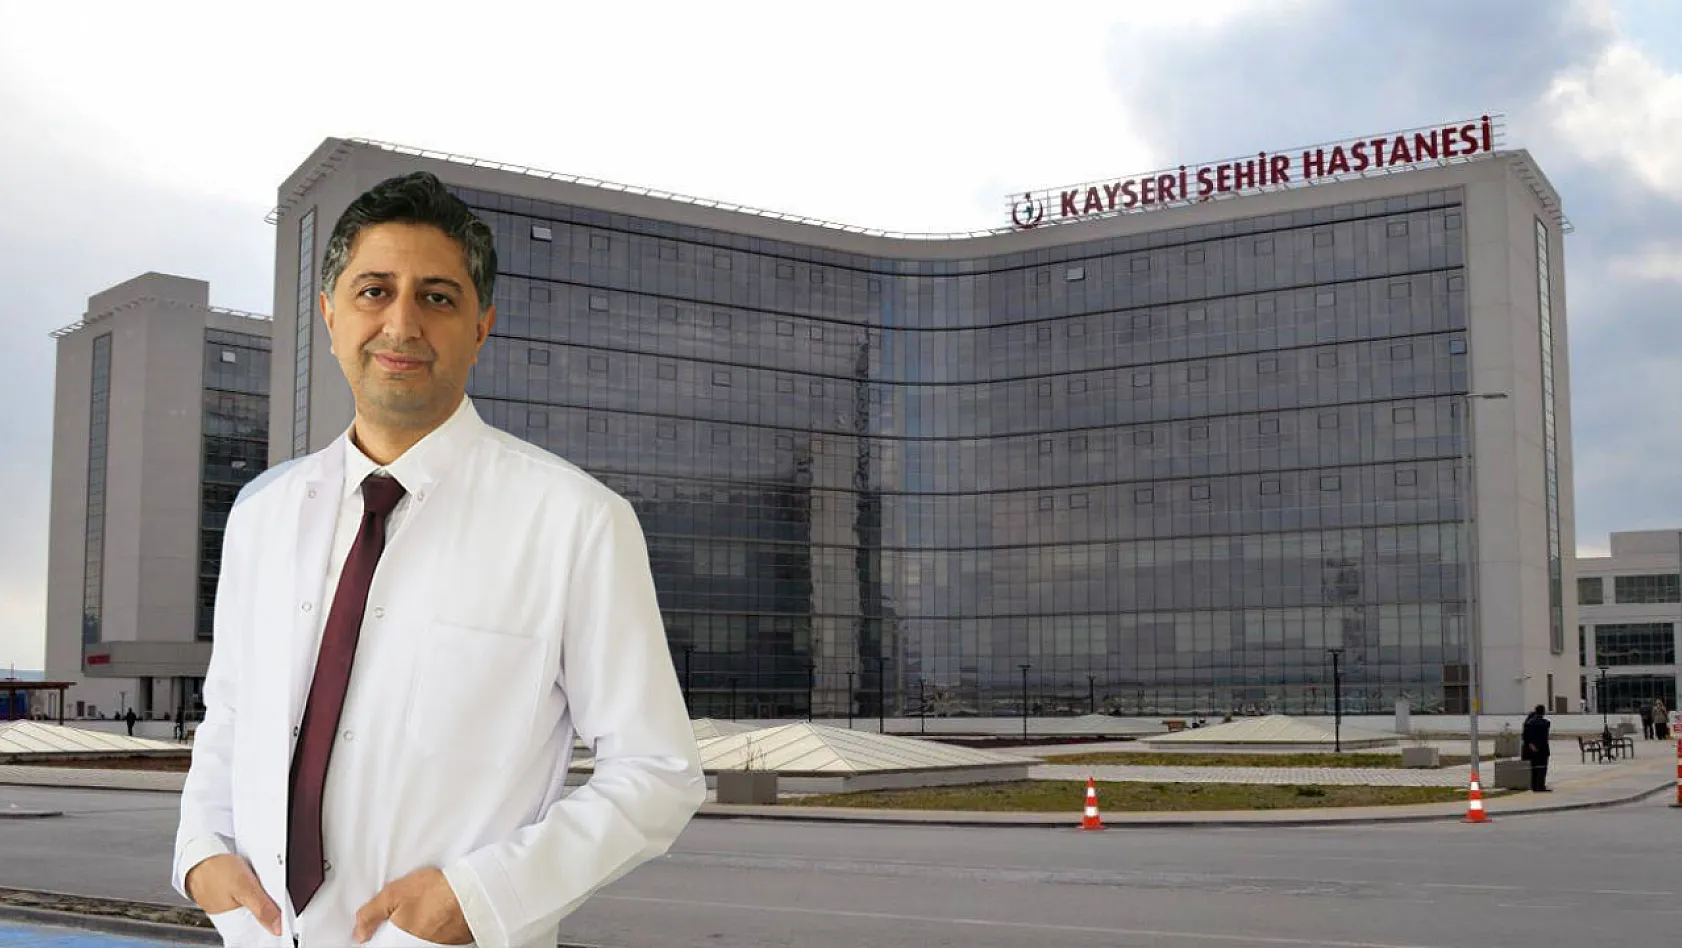 Kayseri'nin yeni profesörü Argun oldu!